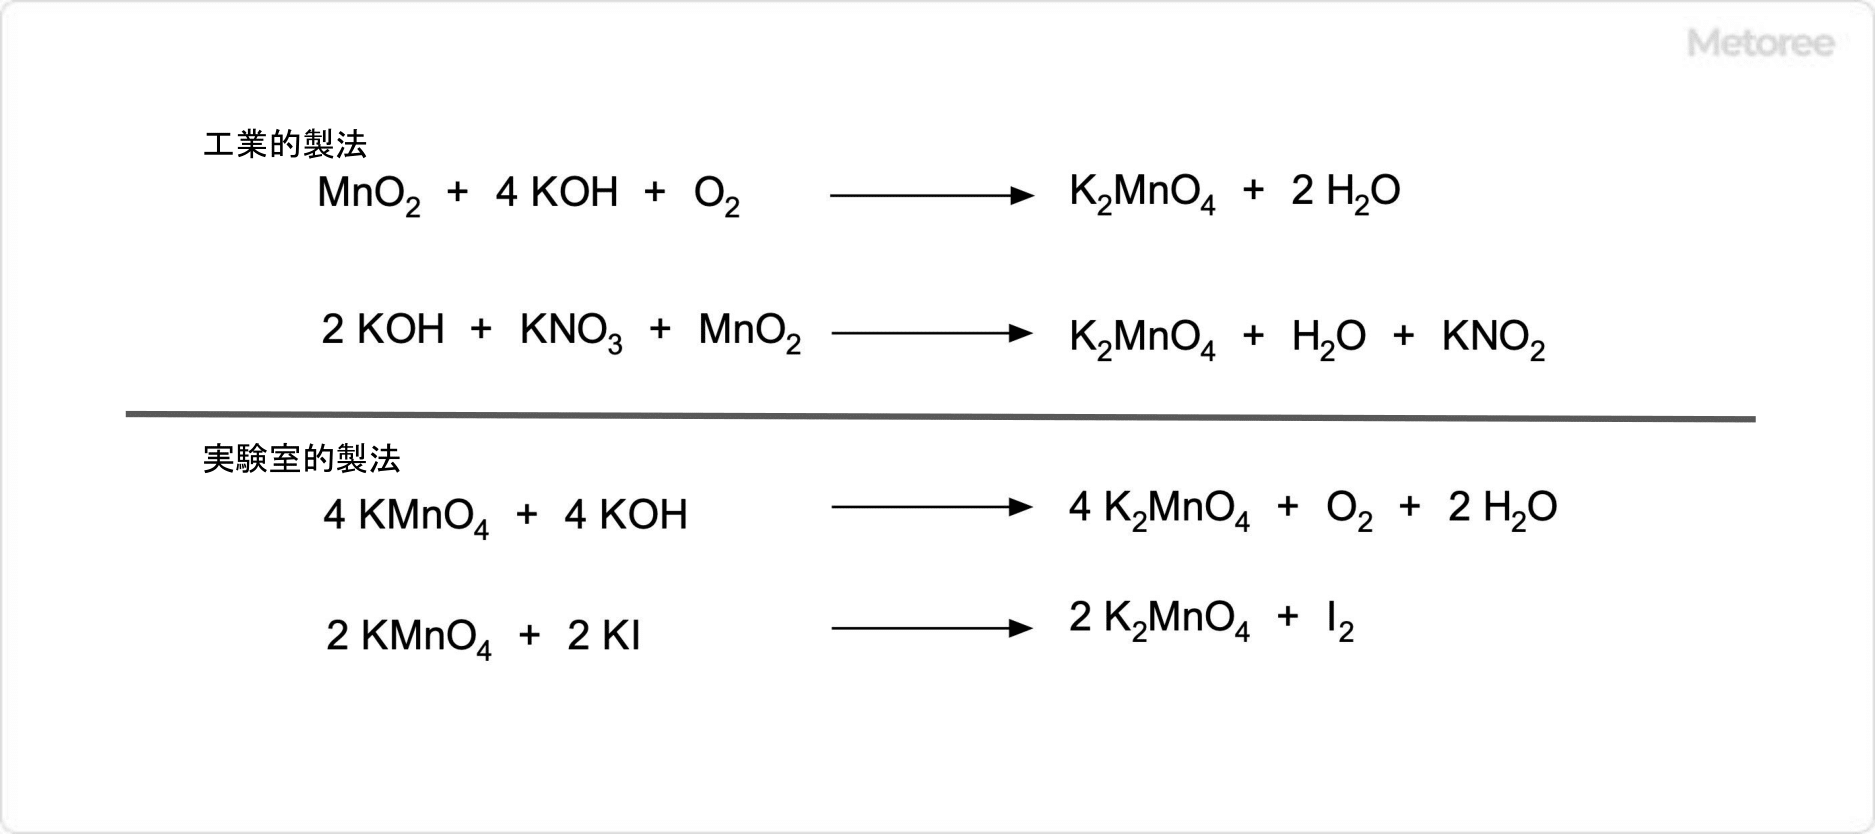 マンガン酸カリウムの合成法